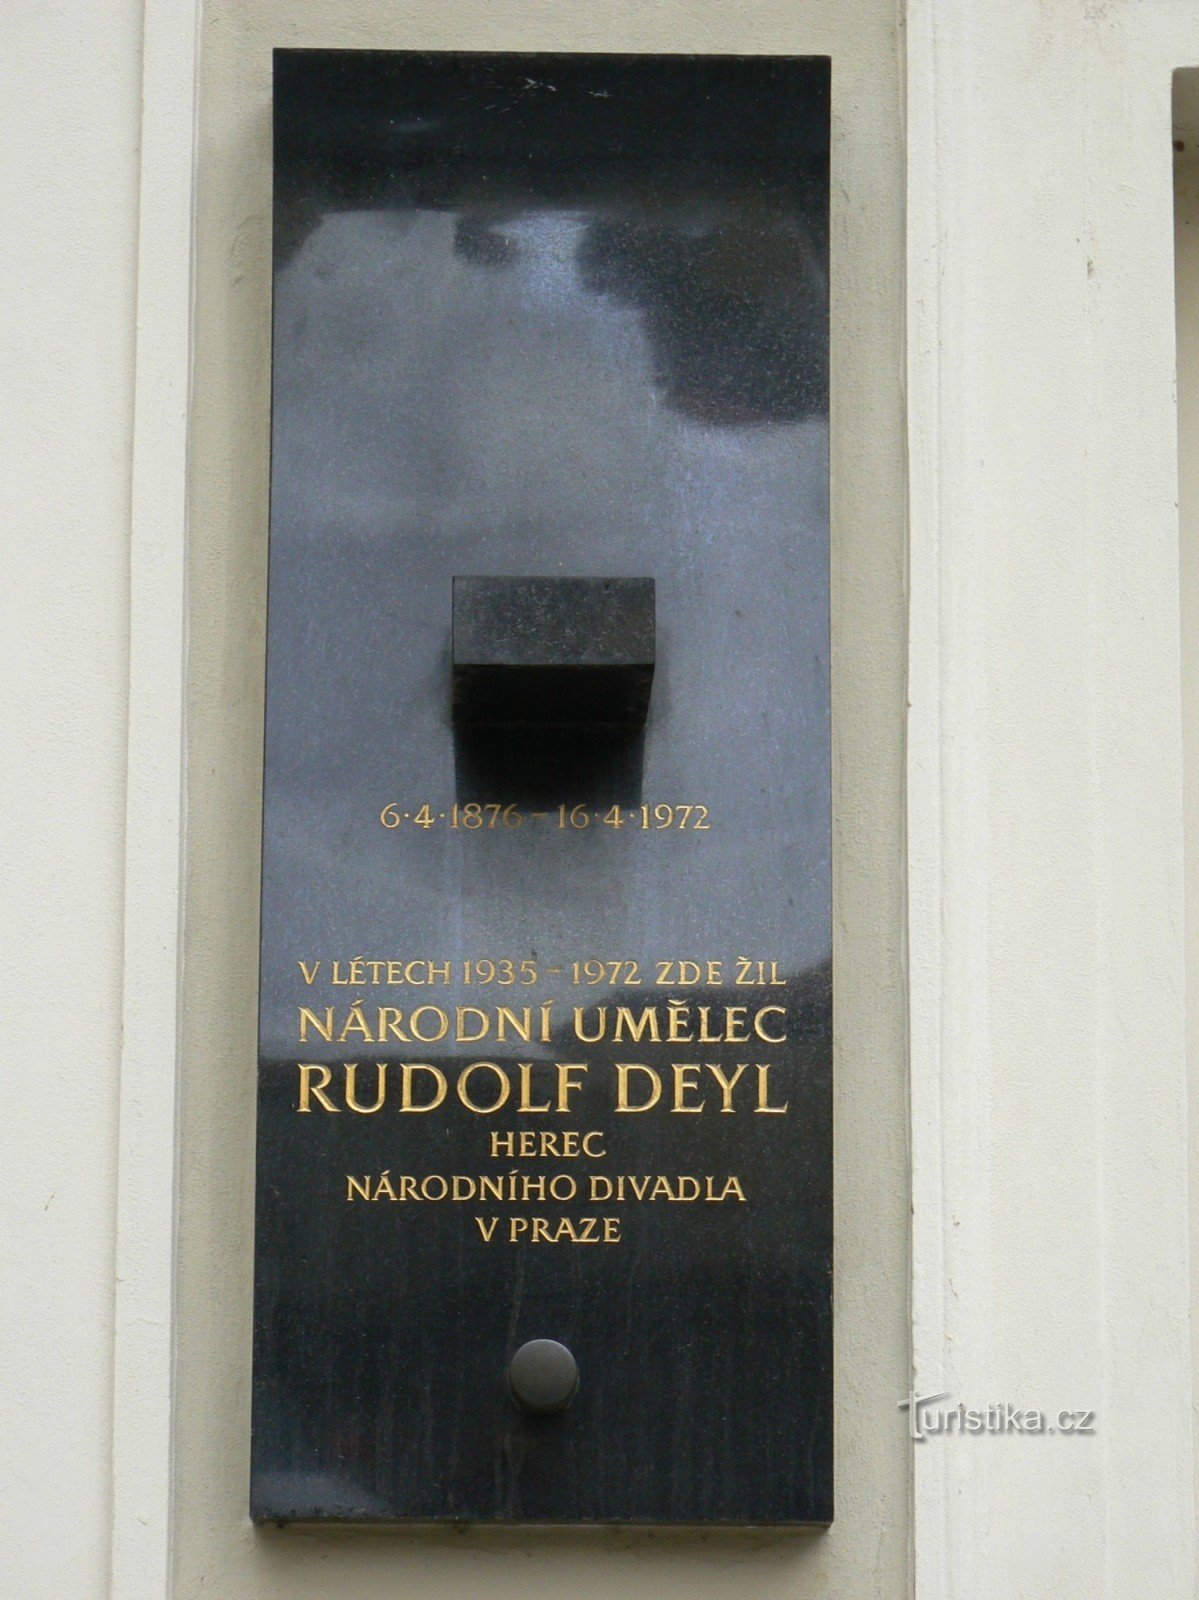 Pamětní deska Rudolf Deyl